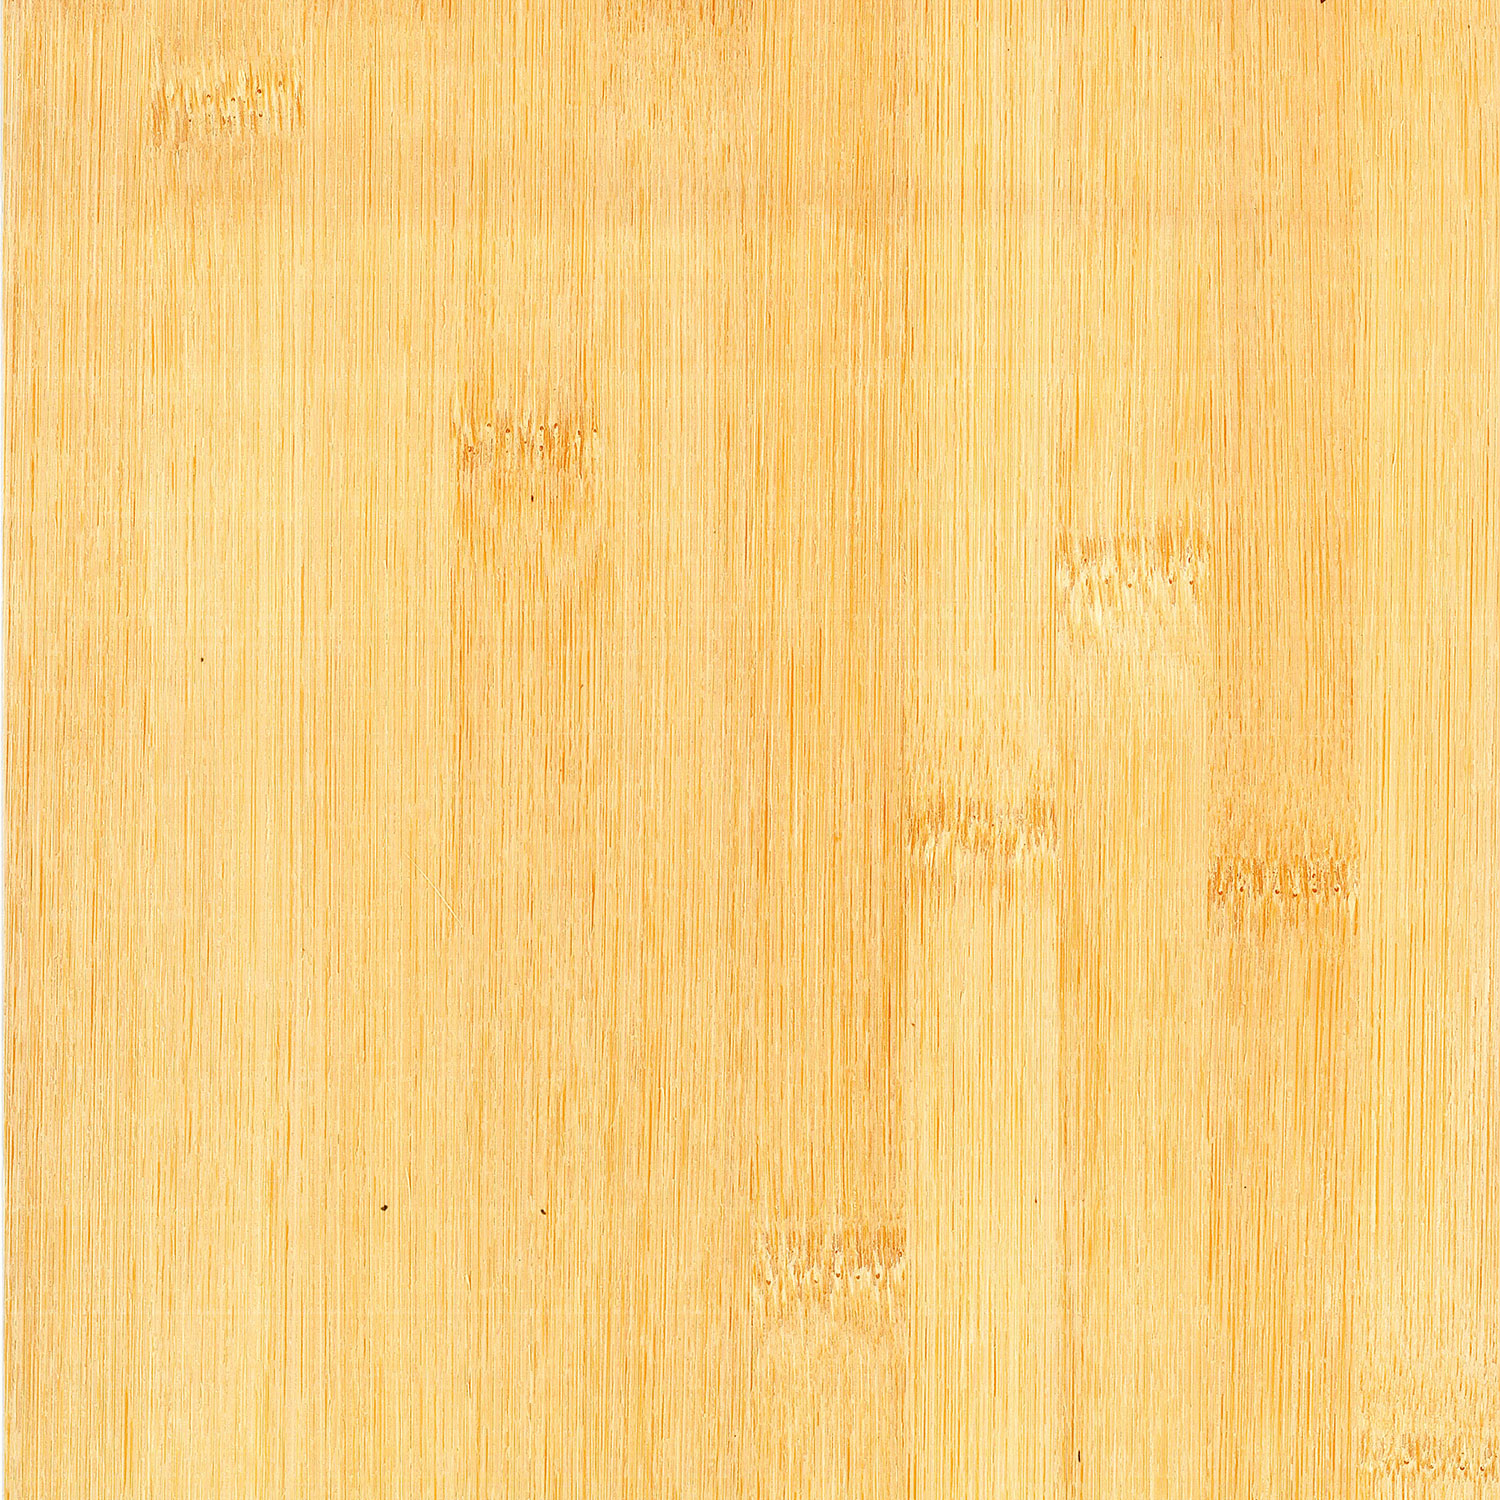 Veneer Bamboo horizontal white